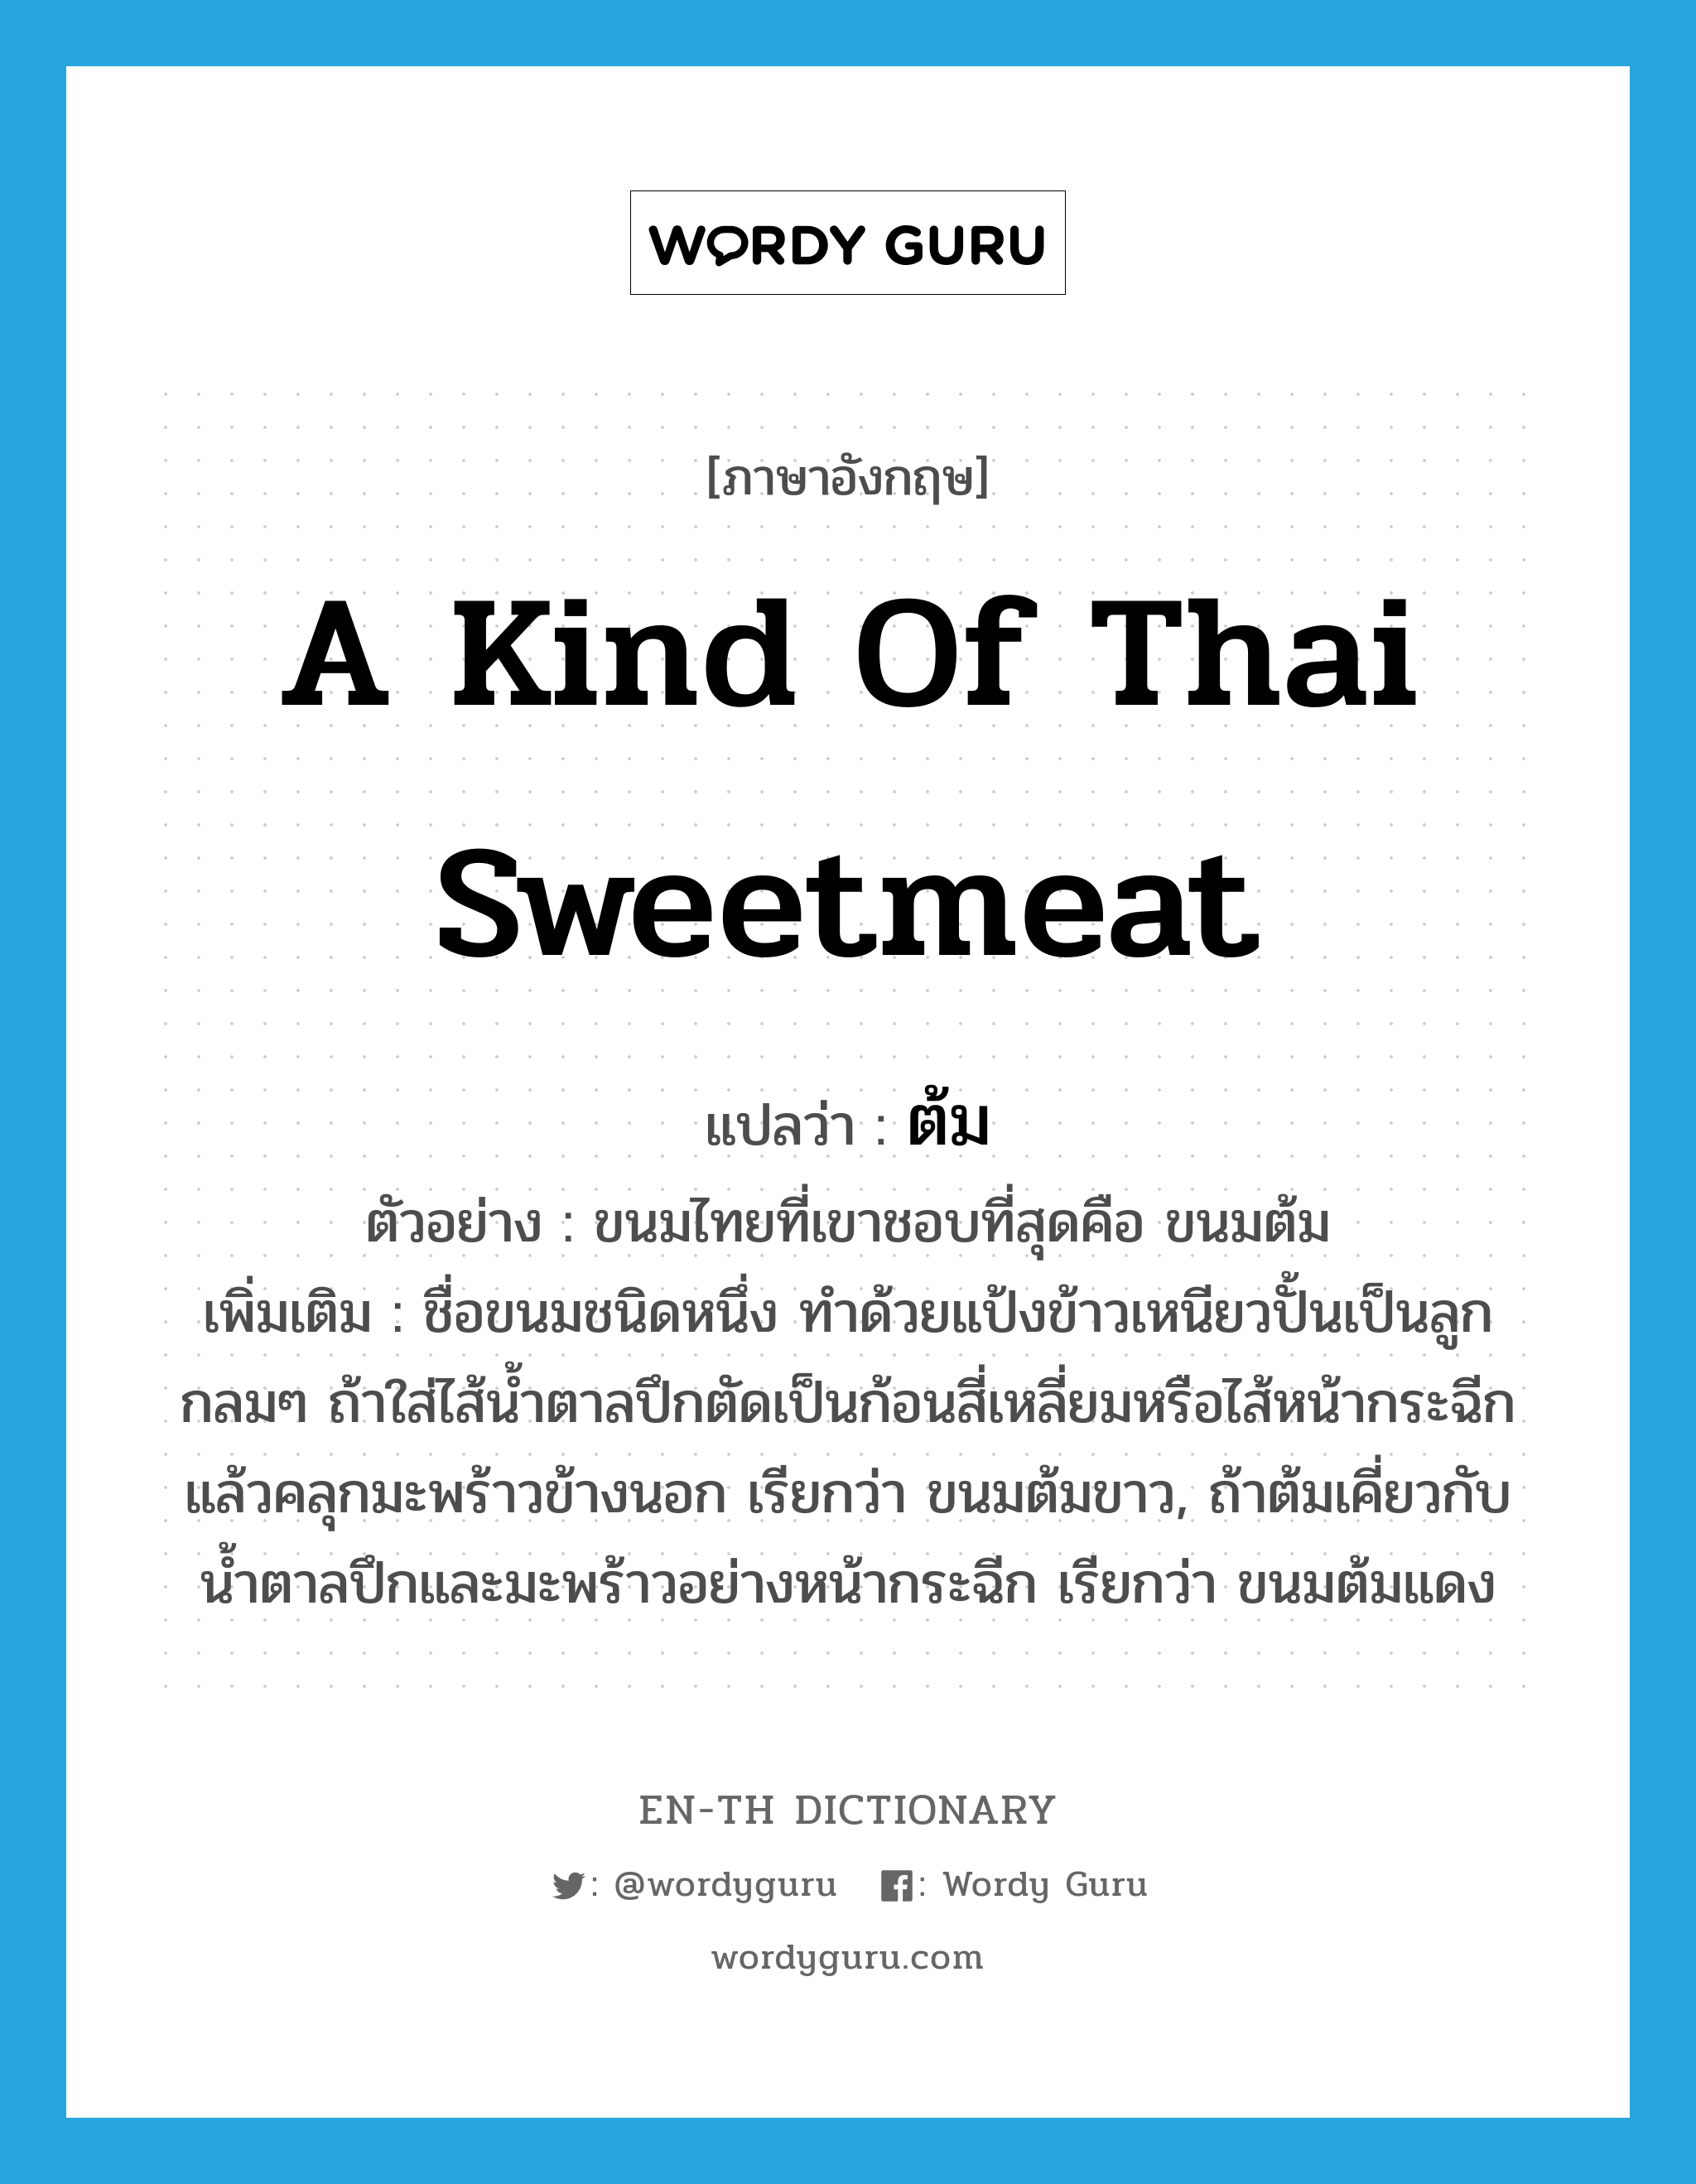 ต้ม ภาษาอังกฤษ?, คำศัพท์ภาษาอังกฤษ ต้ม แปลว่า a kind of Thai sweetmeat ประเภท N ตัวอย่าง ขนมไทยที่เขาชอบที่สุดคือ ขนมต้ม เพิ่มเติม ชื่อขนมชนิดหนึ่ง ทำด้วยแป้งข้าวเหนียวปั้นเป็นลูกกลมๆ ถ้าใส่ไส้น้ำตาลปึกตัดเป็นก้อนสี่เหลี่ยมหรือไส้หน้ากระฉีกแล้วคลุกมะพร้าวข้างนอก เรียกว่า ขนมต้มขาว, ถ้าต้มเคี่ยวกับน้ำตาลปึกและมะพร้าวอย่างหน้ากระฉีก เรียกว่า ขนมต้มแดง หมวด N